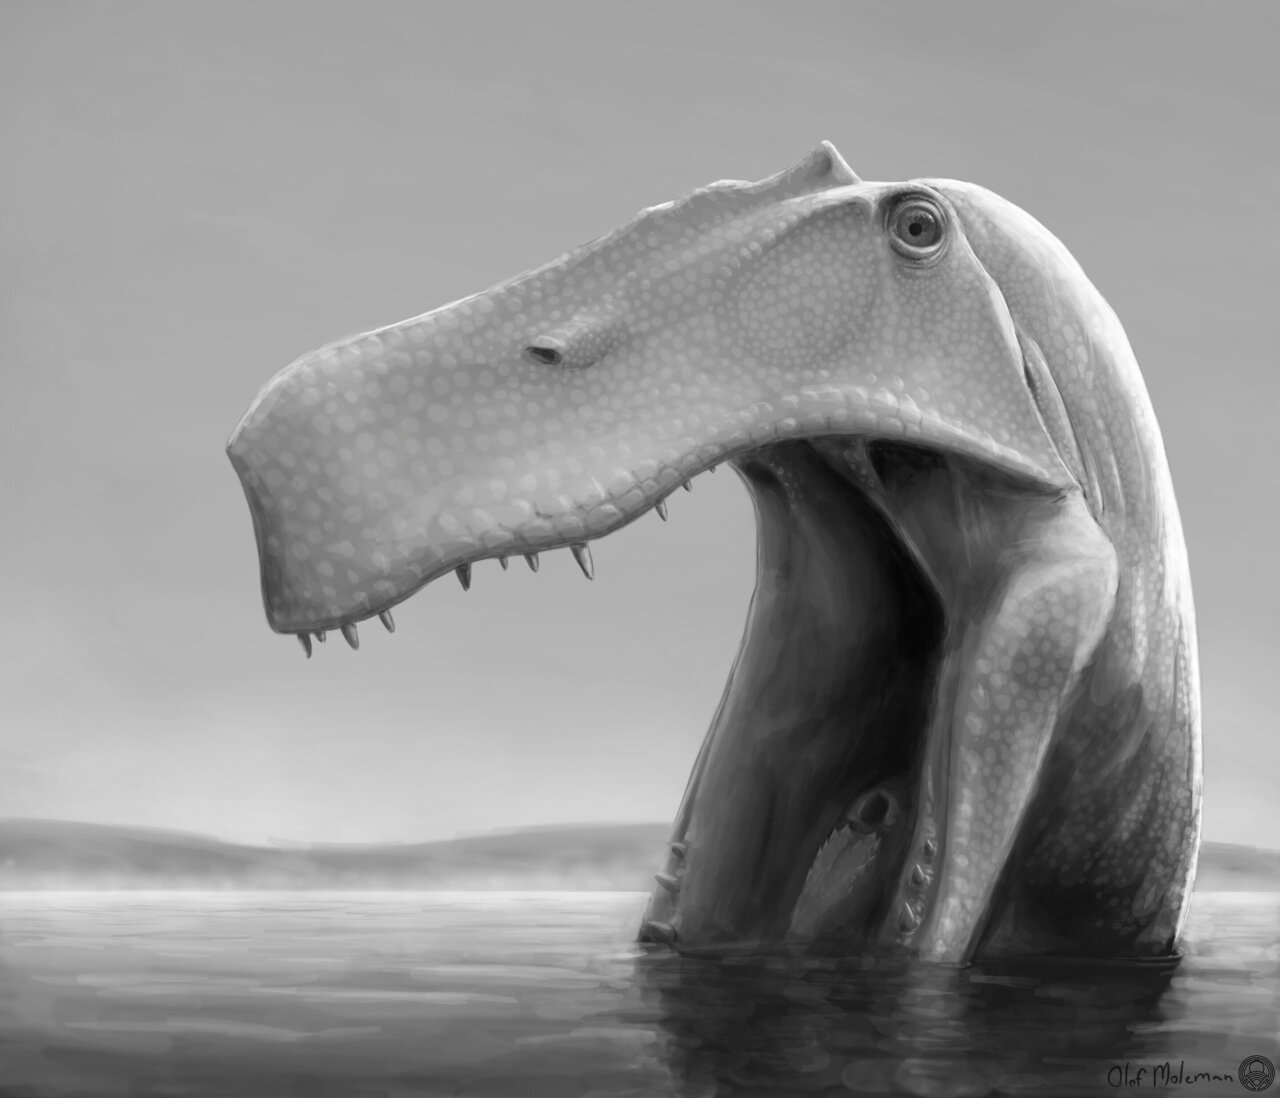 Бразилія в ранньому крейдяному періоді, 115 млн. років тому: хижий динозавр Irritator challengeri шукає дрібну здобич, включаючи рибу, розправленими нижніми щелепами на мілководді.